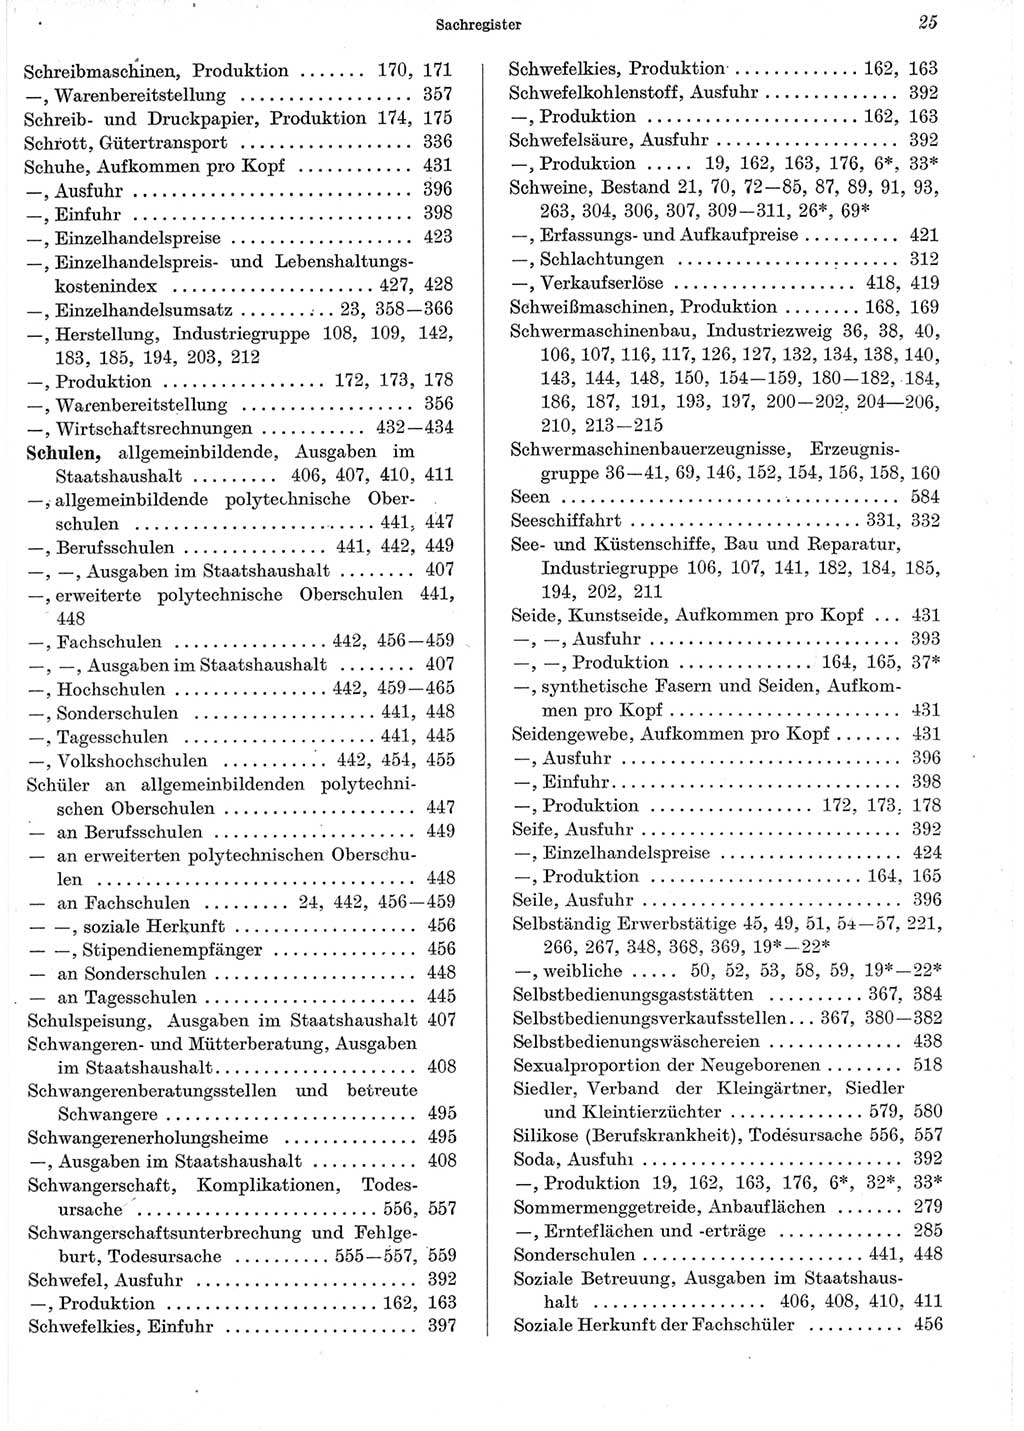 Statistisches Jahrbuch der Deutschen Demokratischen Republik (DDR) 1965, Seite 25 (Stat. Jb. DDR 1965, S. 25)